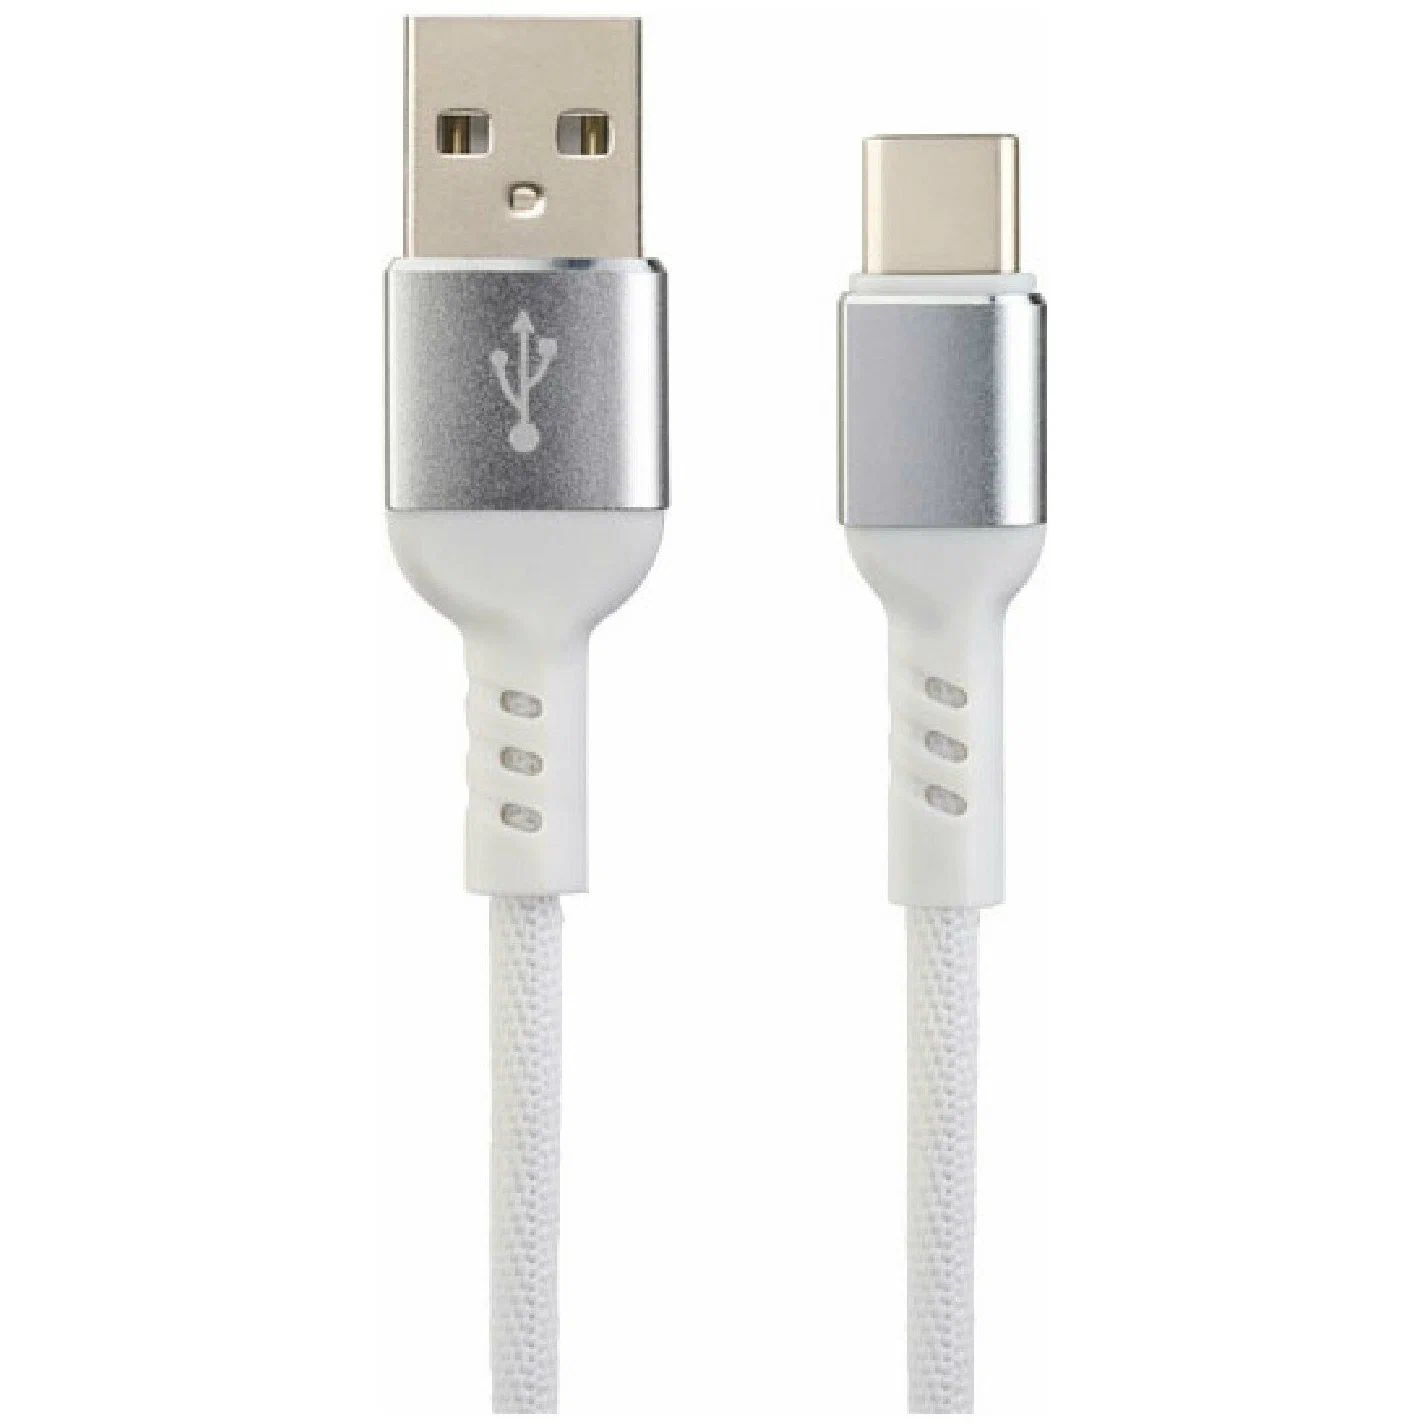 Кабель Perfeo U4906 USB 2.0 A вилка - USB Type-C вилка 1 м white box, цвет белый